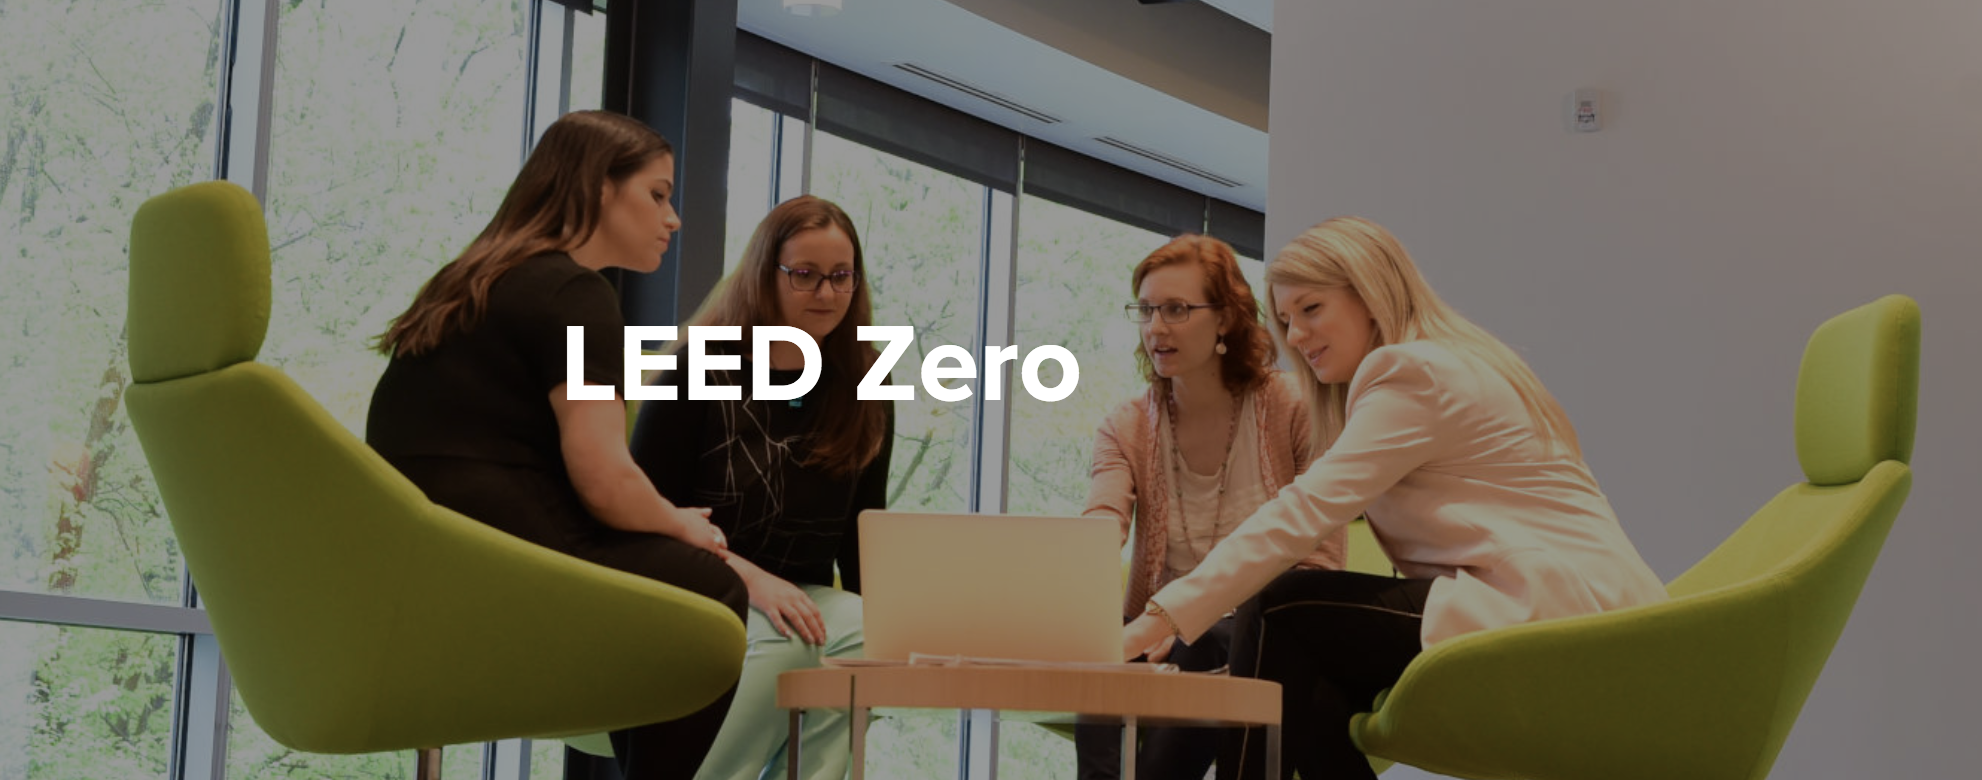 USGBC Launches LEED Zero program